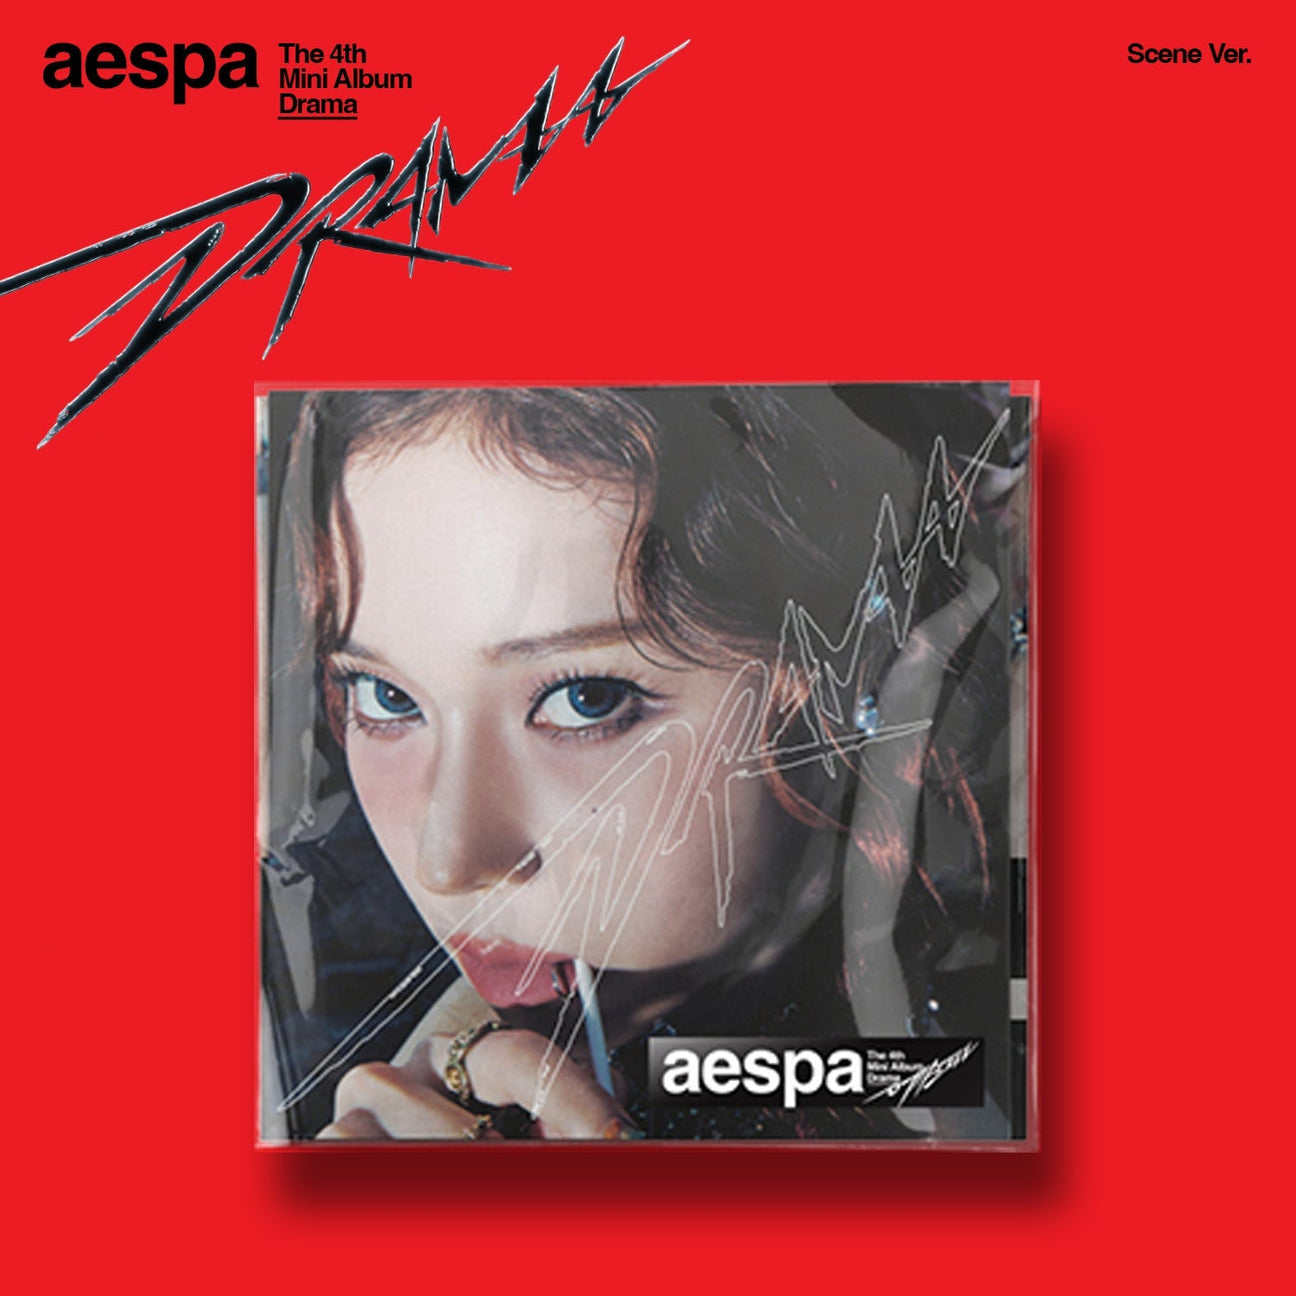 aespa - 4th Mini-Album 'DRAMA' (SCENE Version)